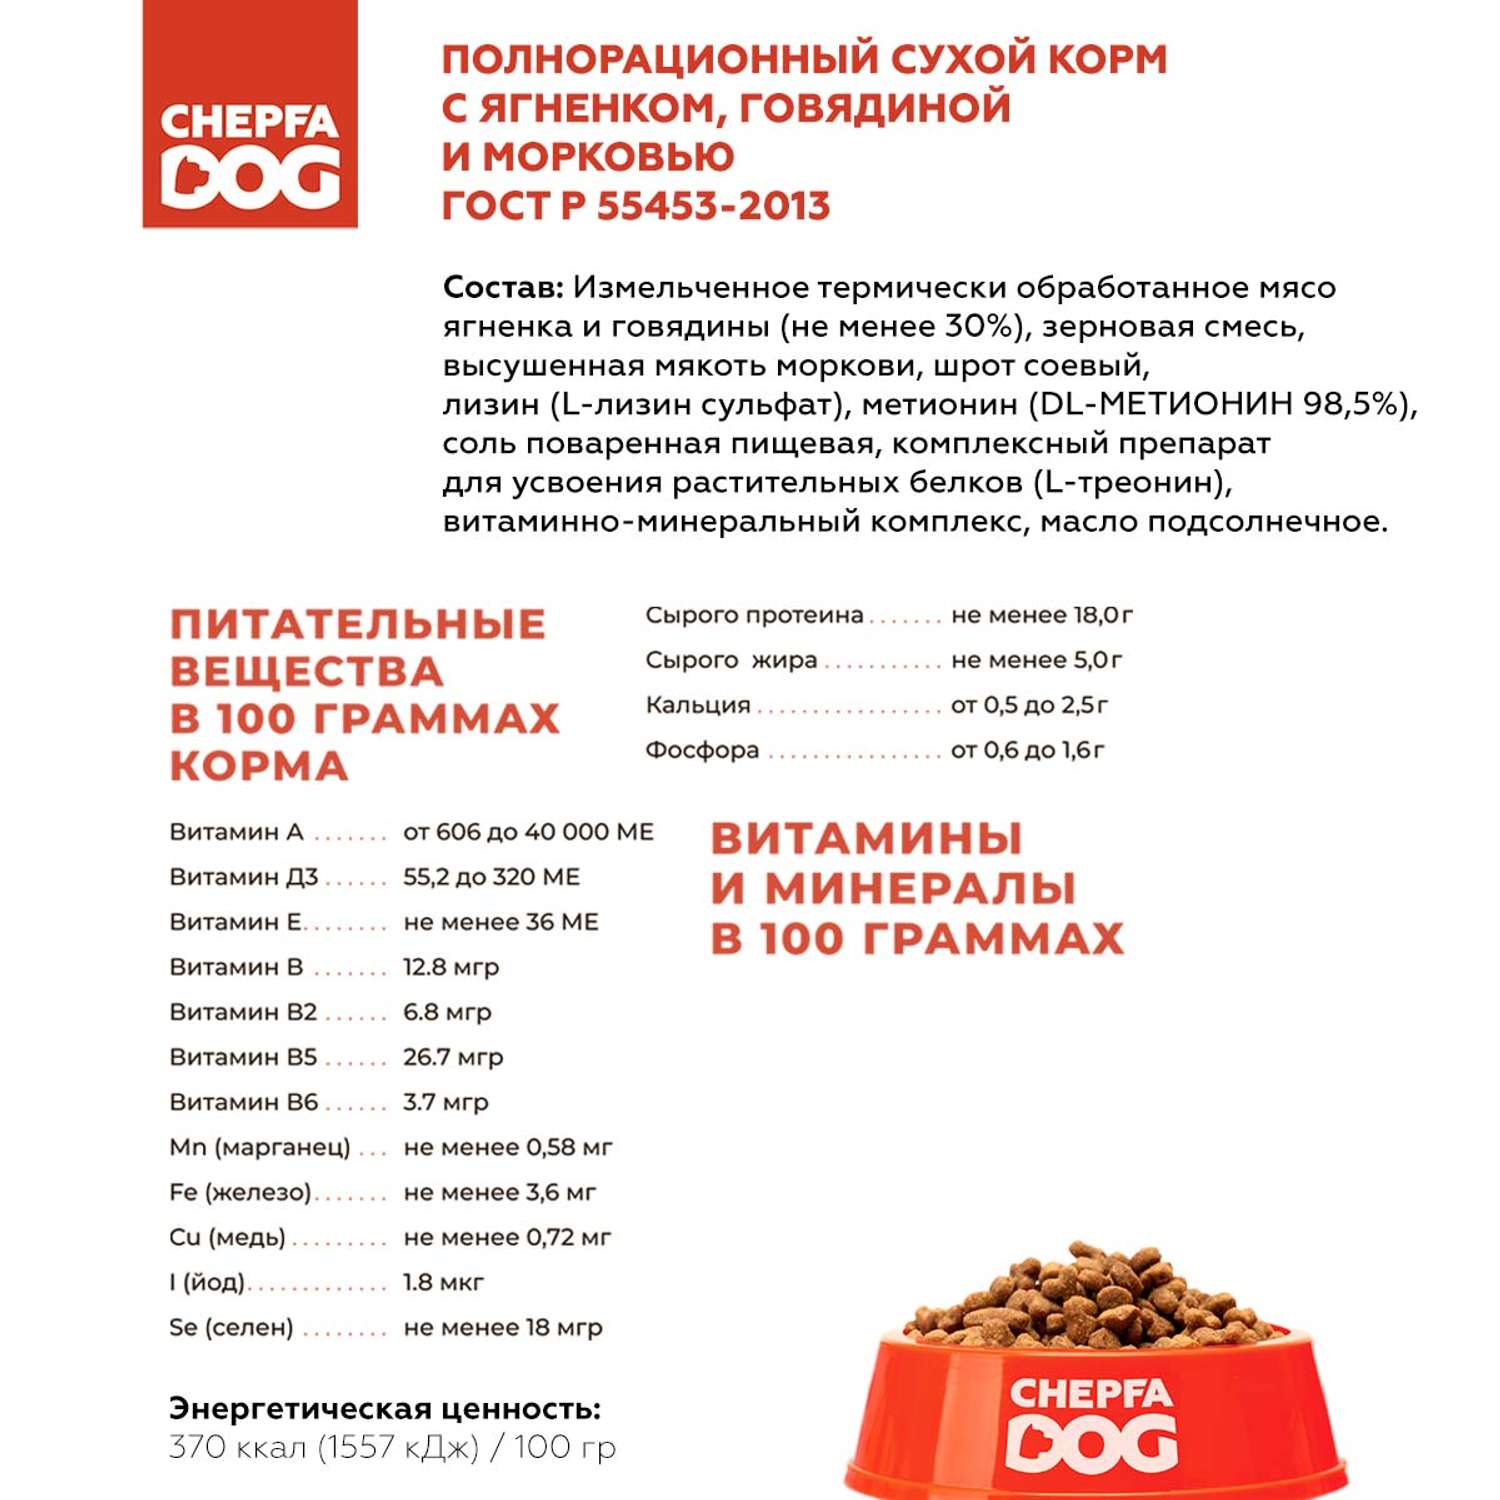 Сухой корм для собак Chepfa Dog Полнорационный ягненок и говядина 2.2 кг для взрослых собак средних и крупных пород - фото 4